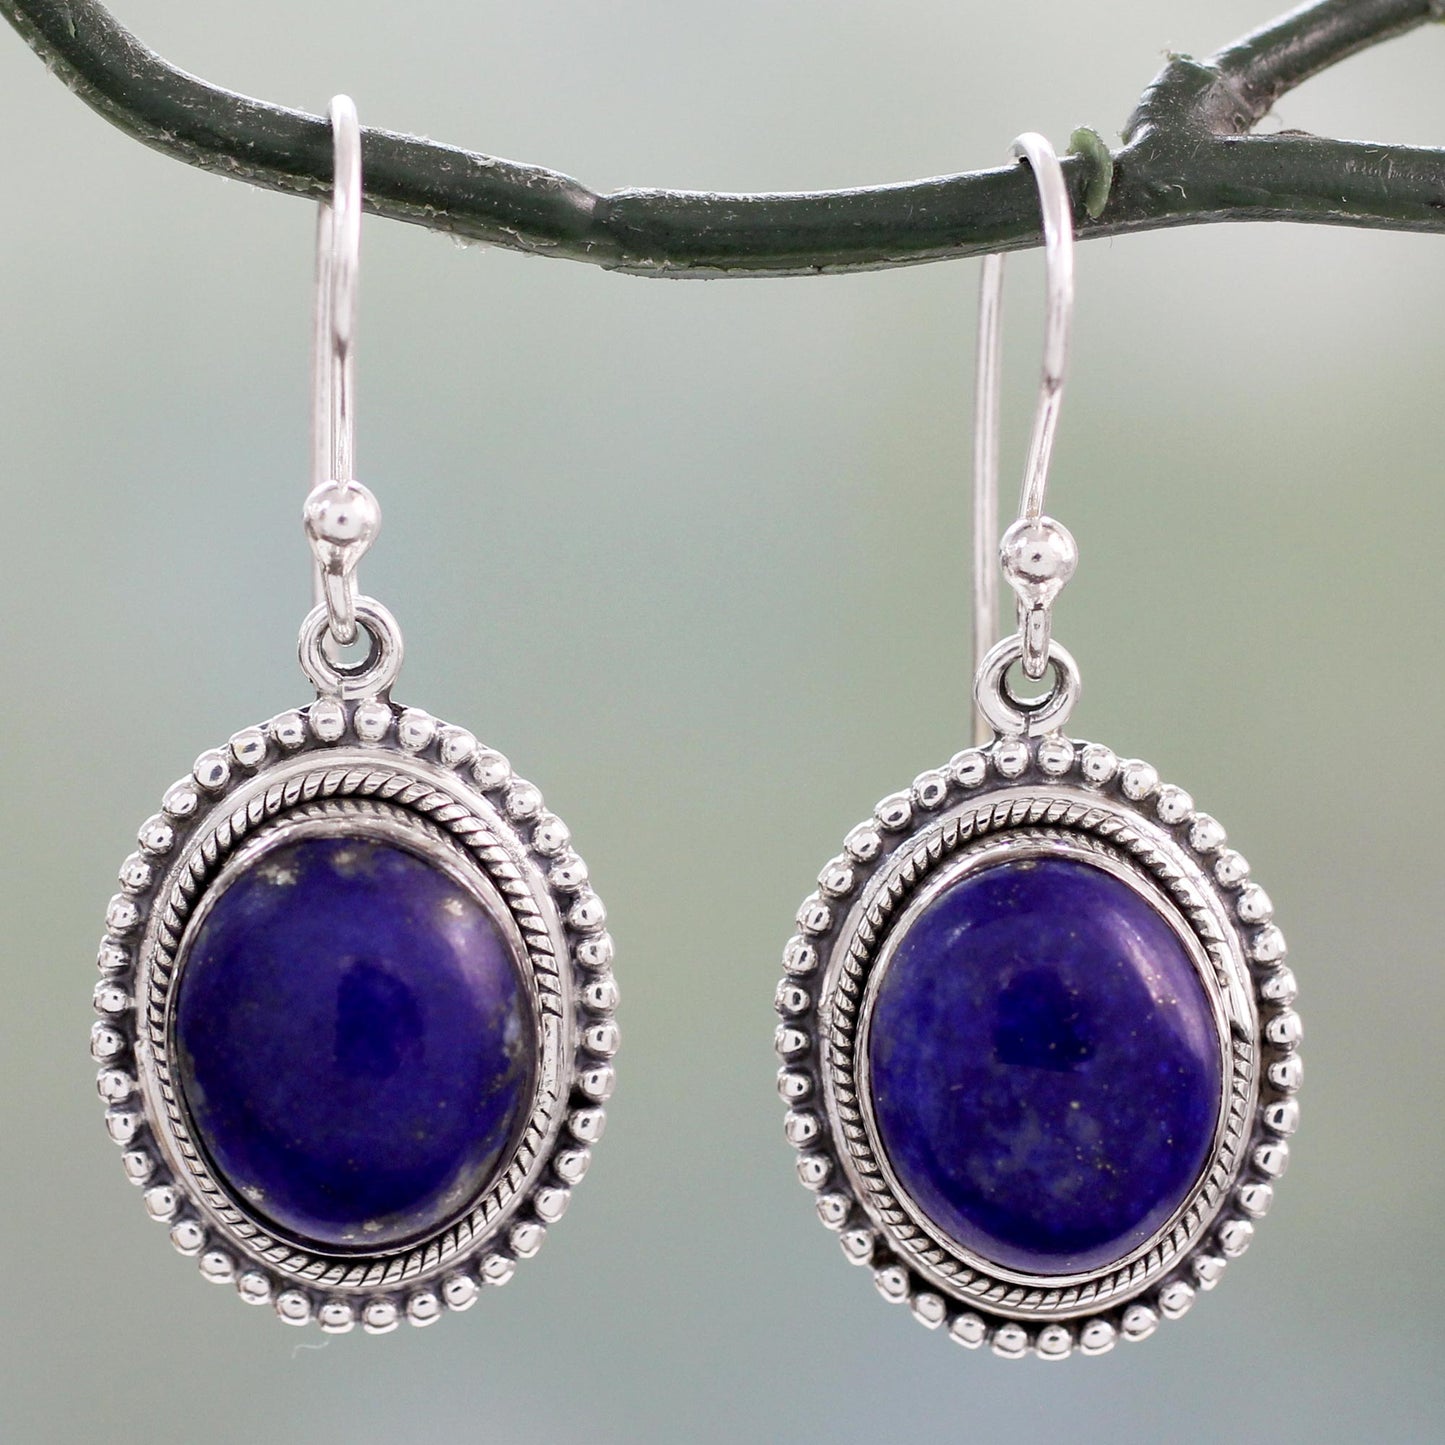 True Clarity Lapis Lazuli & Silver Dangle Earrings